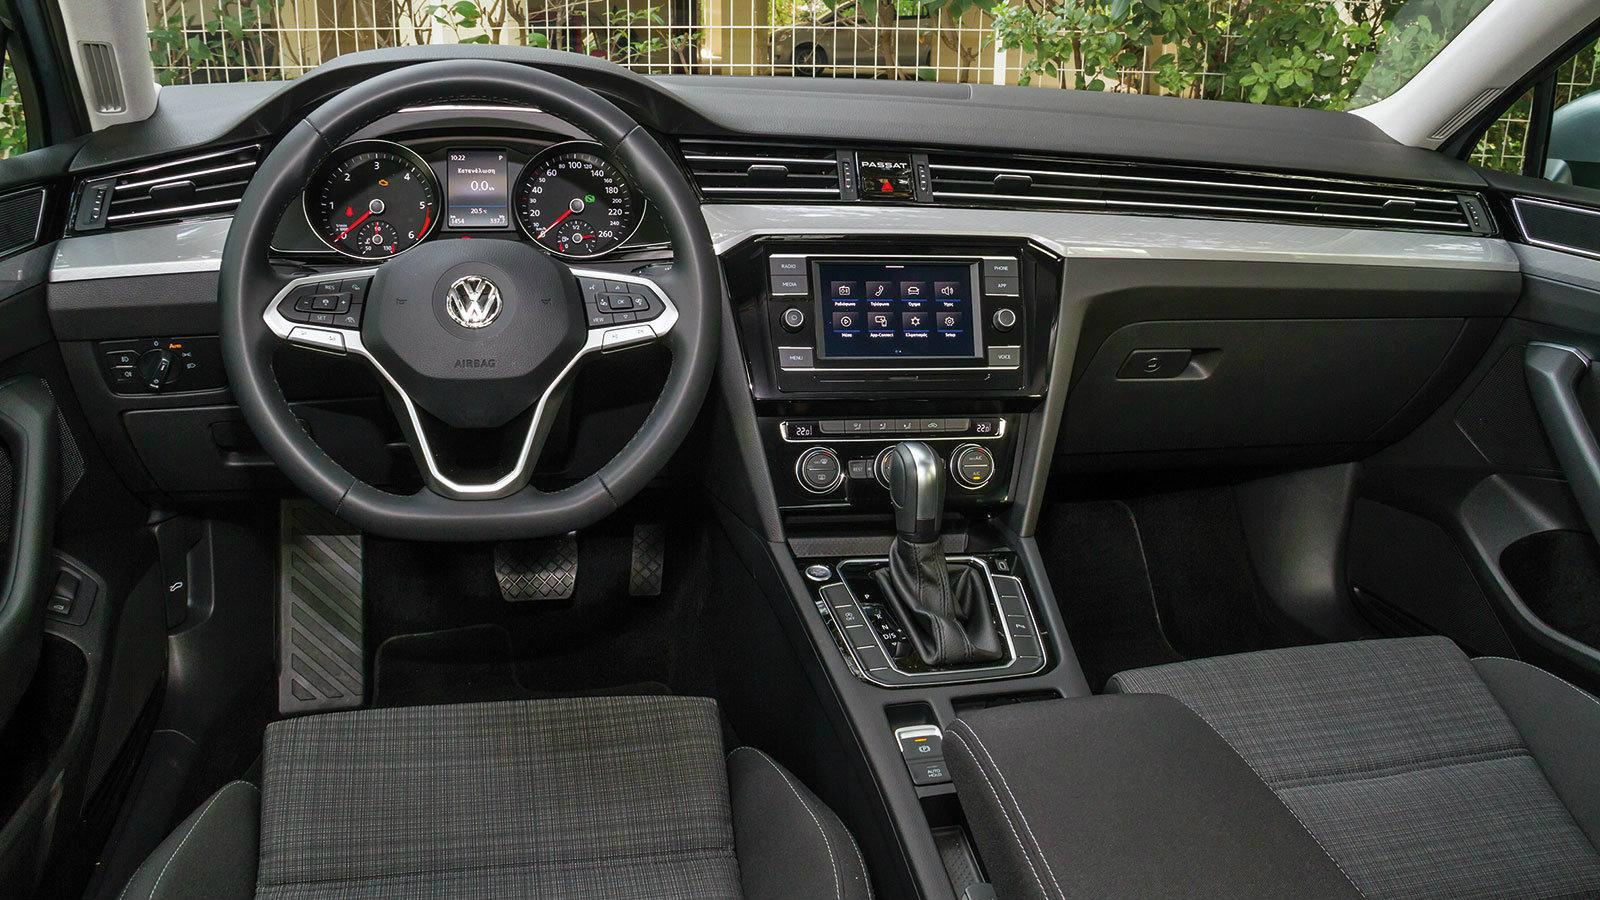 Δοκιμάζουμε το νέο VW Passat 1.6 TDI των 120 ίππων